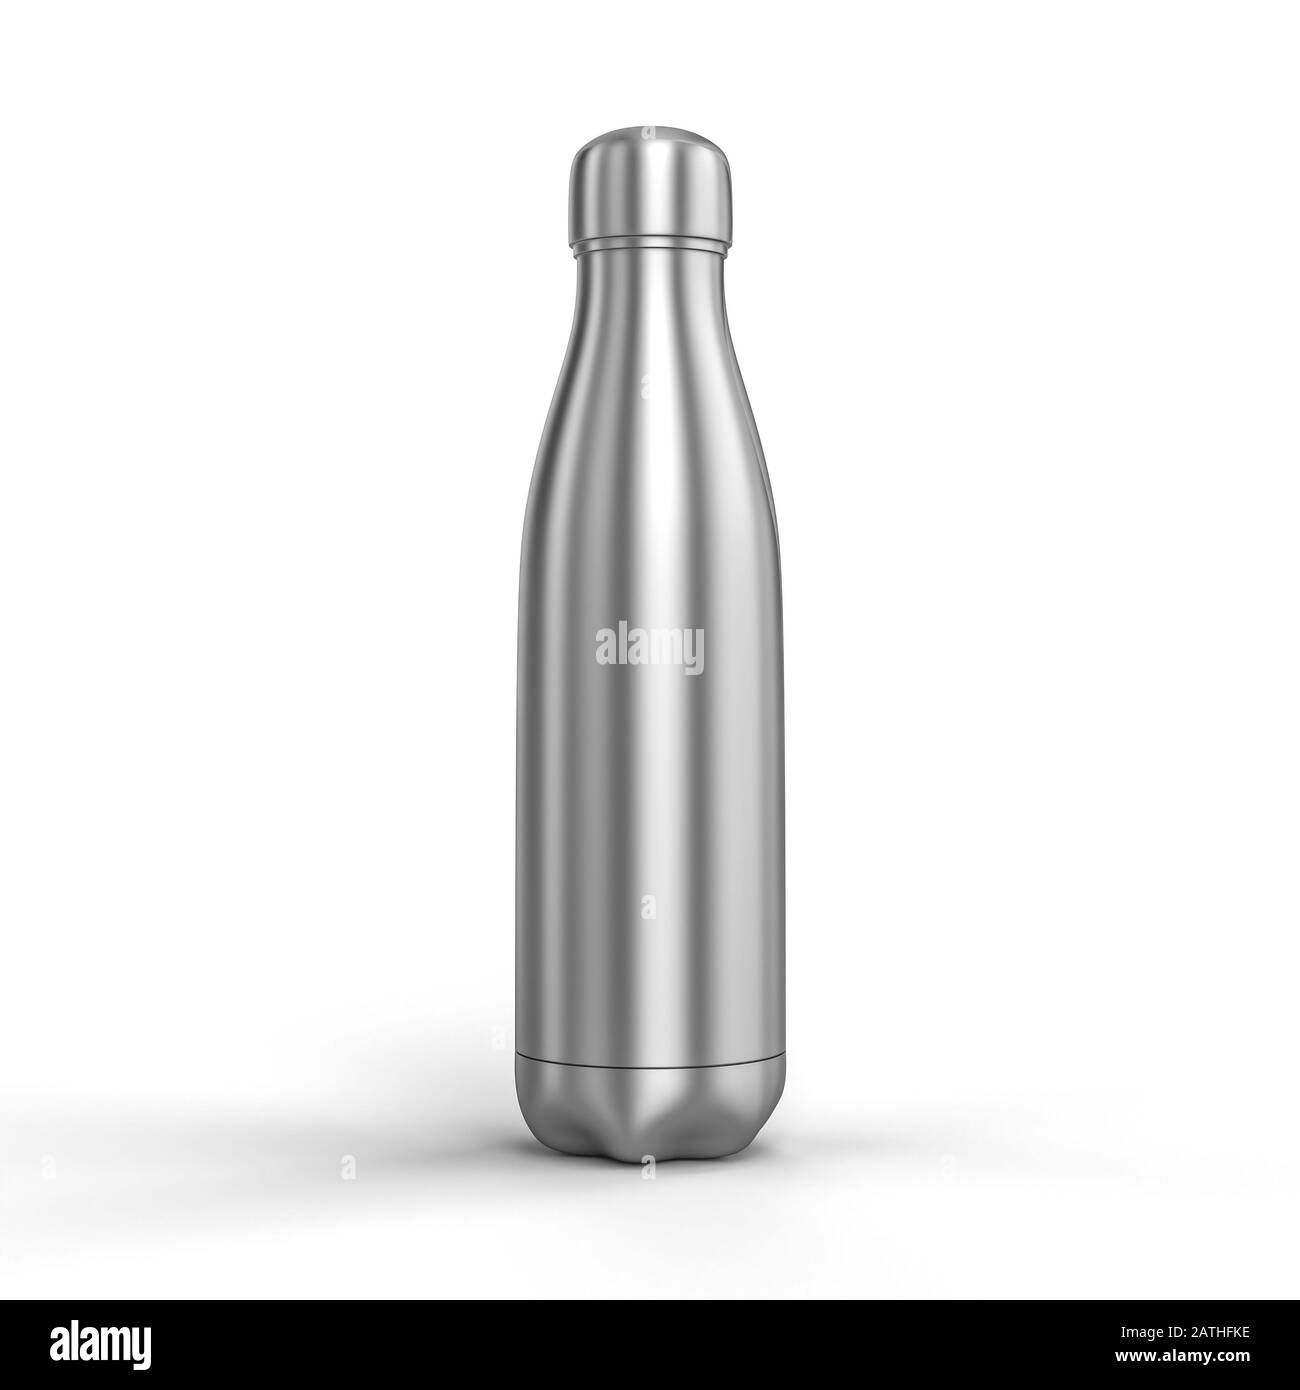 3d rende l'immagine di una bottiglia termica in acciaio inox. concetto di riutilizzo ed ecologia contro l'uso eccessivo di plastica. Foto Stock